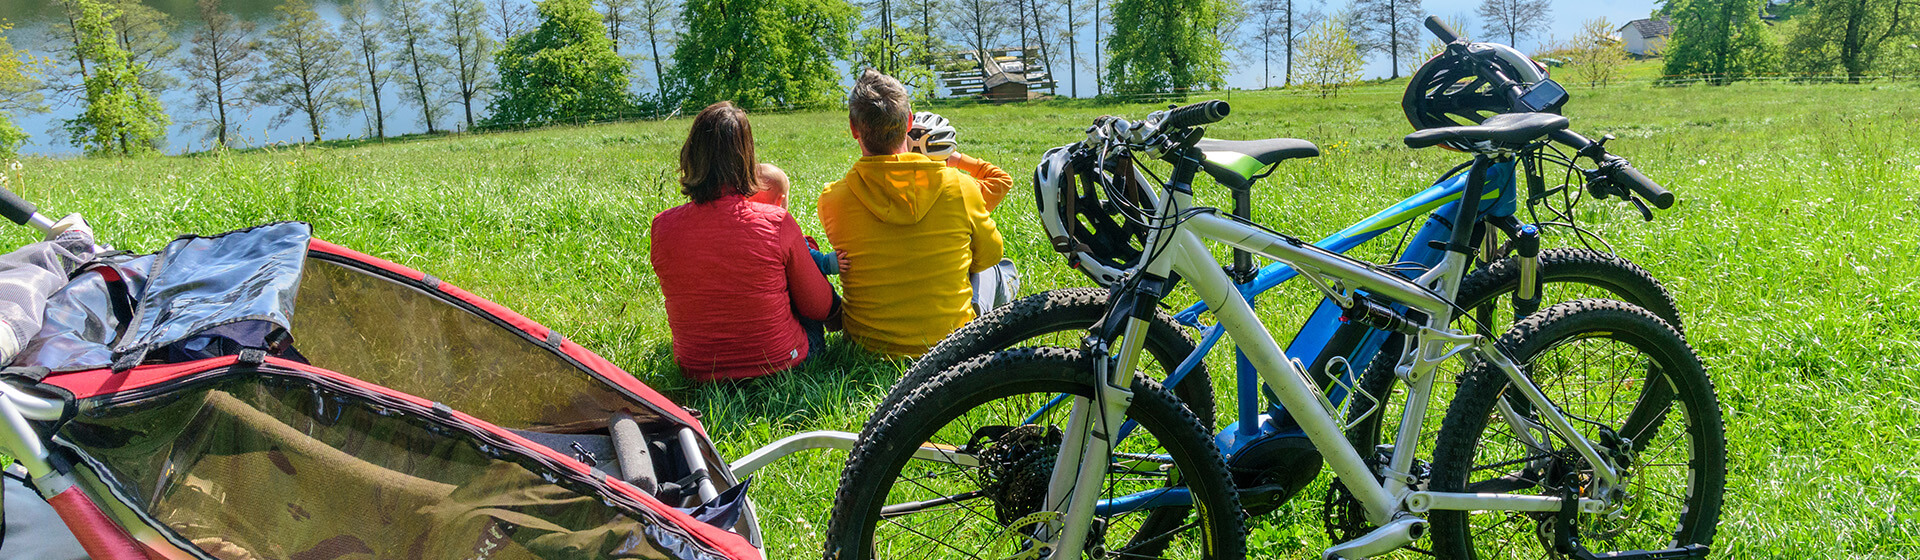 5 Tipps für die erste Fahrradtour mit Kinderanhänger